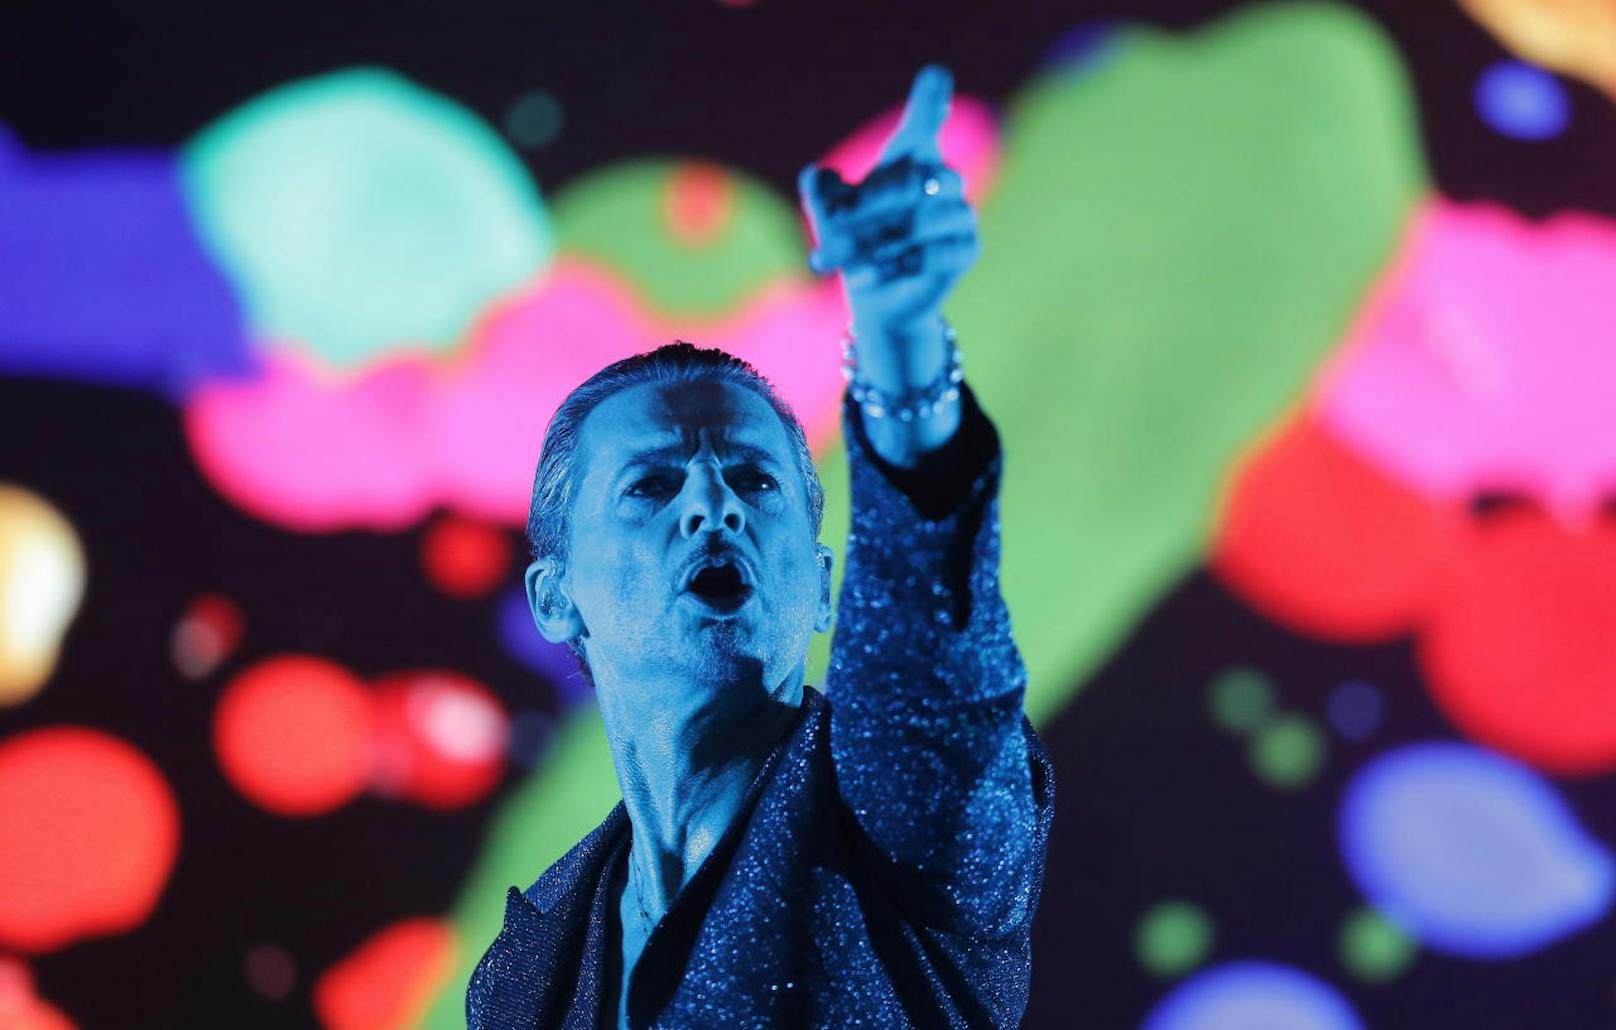 Sänger Dave Gahan von Depeche Mode auf der Konzertbühne in Warschau, Polen, im Juli 2017